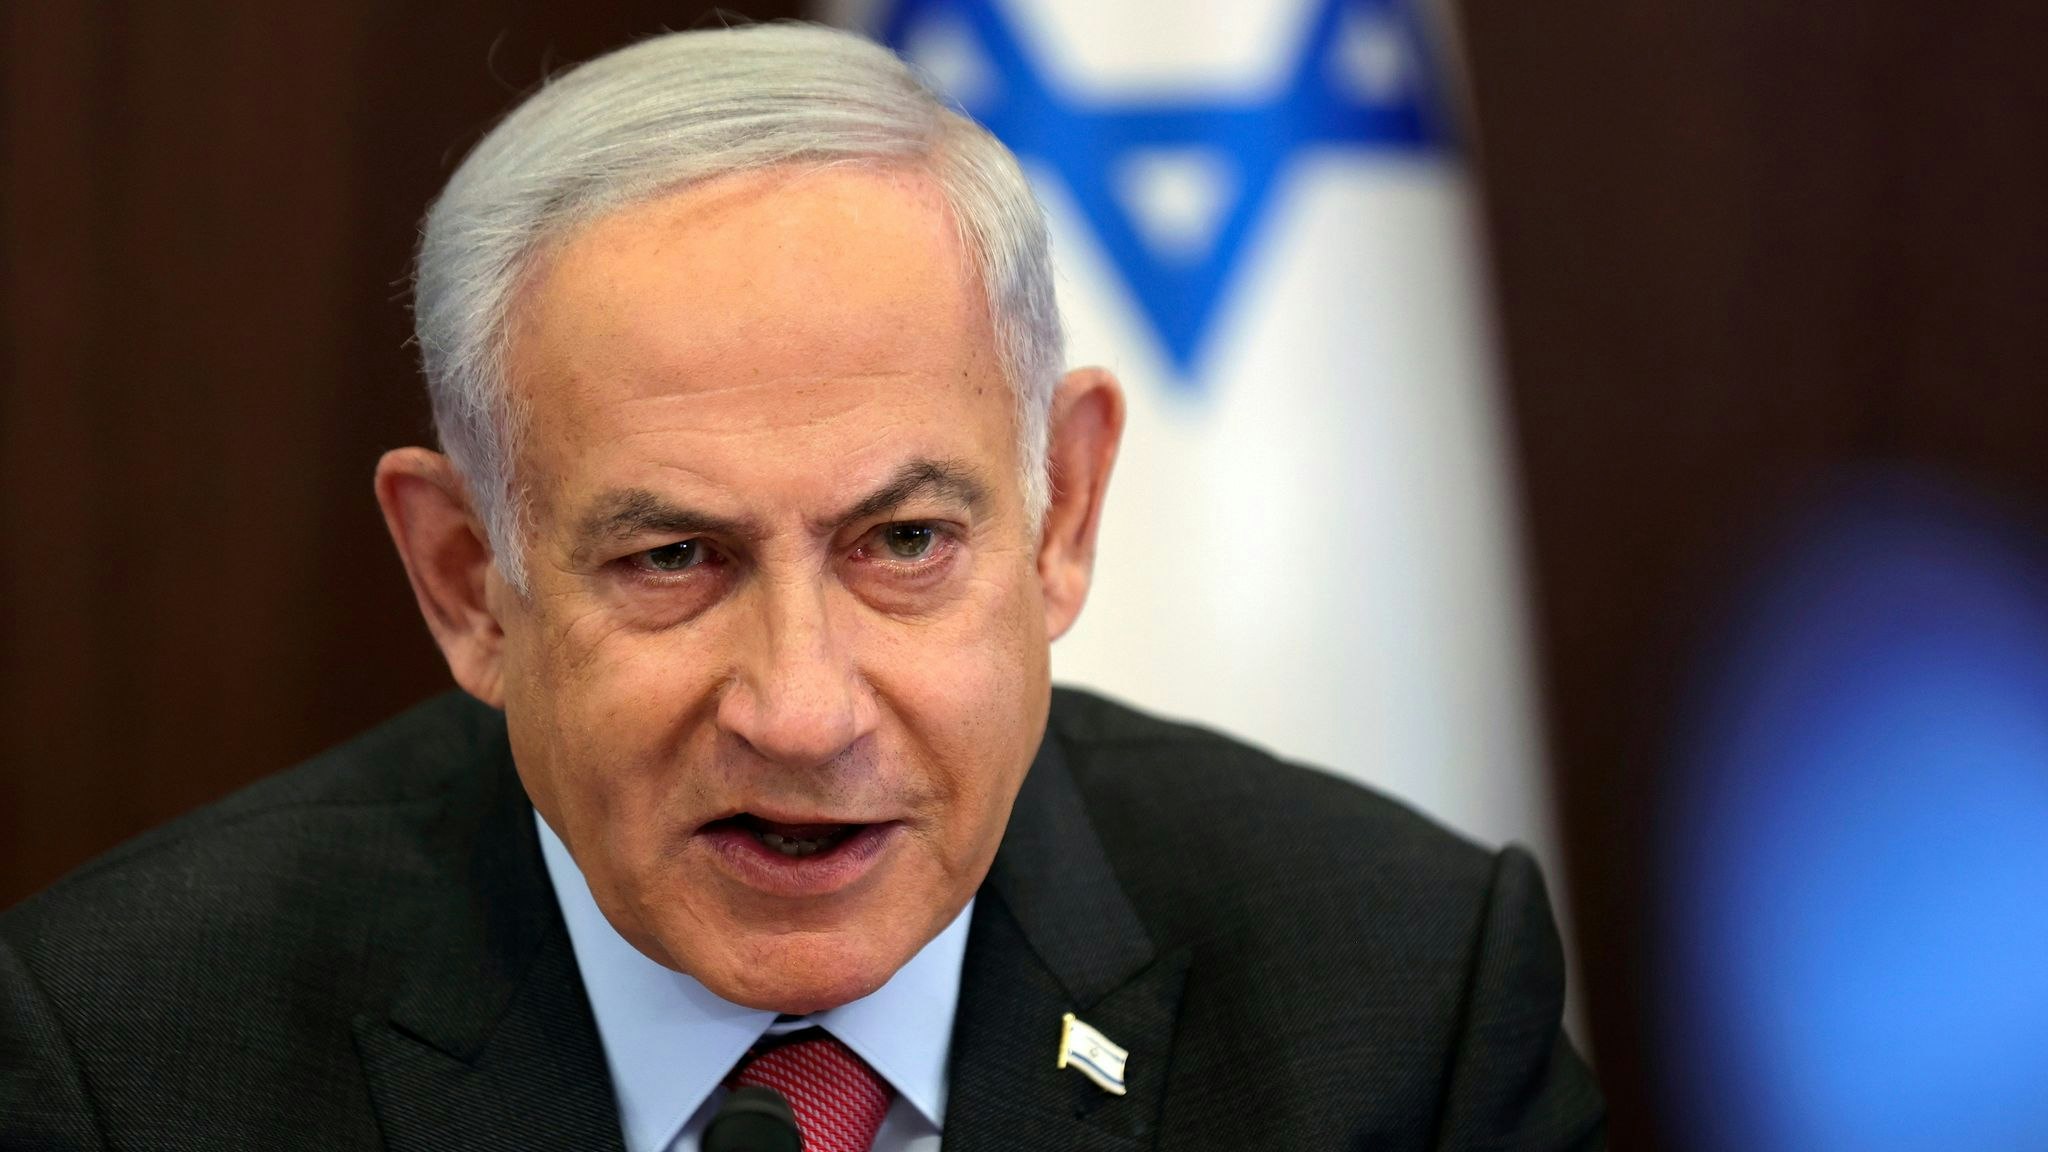 Das neue Gesetz gilt als zugeschnitten auf Amtsinhaber Benjamin Netanjahu. Foto: dpa/Suitan